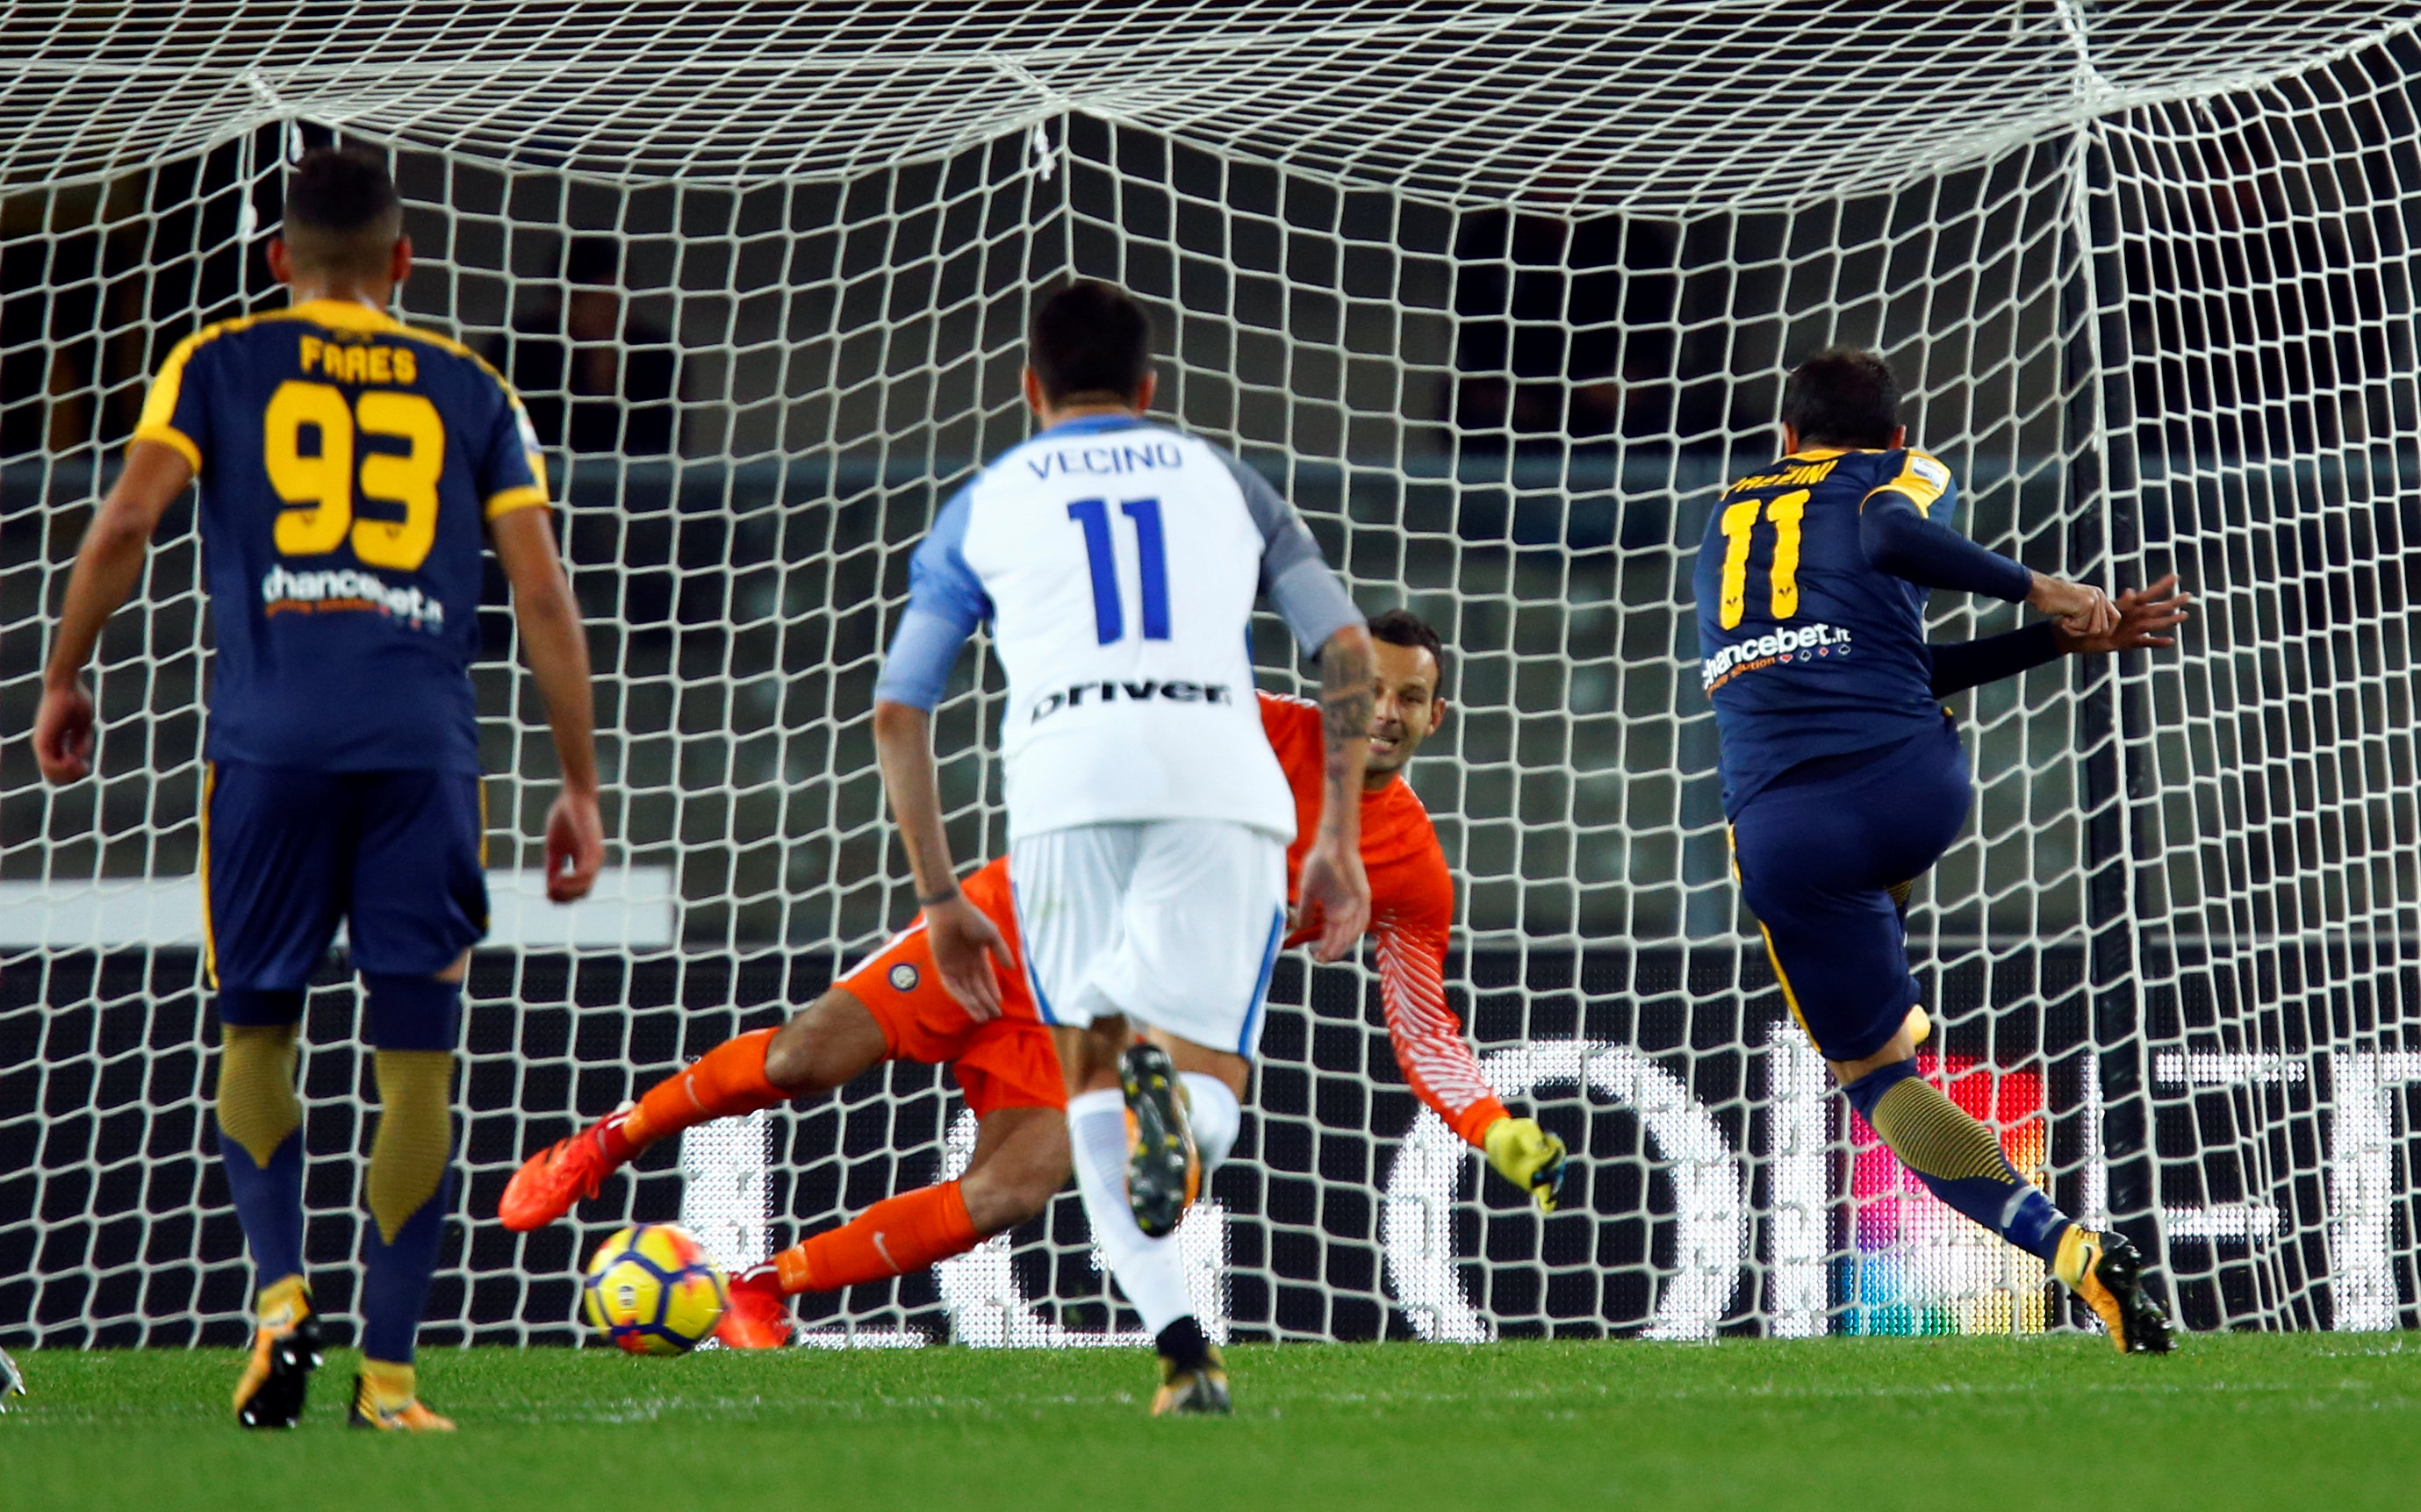 Pazzini dứt điểm gỡ hòa 1-1 cho Hellas Verona từ chấm 11m. Ảnh: REUTERS